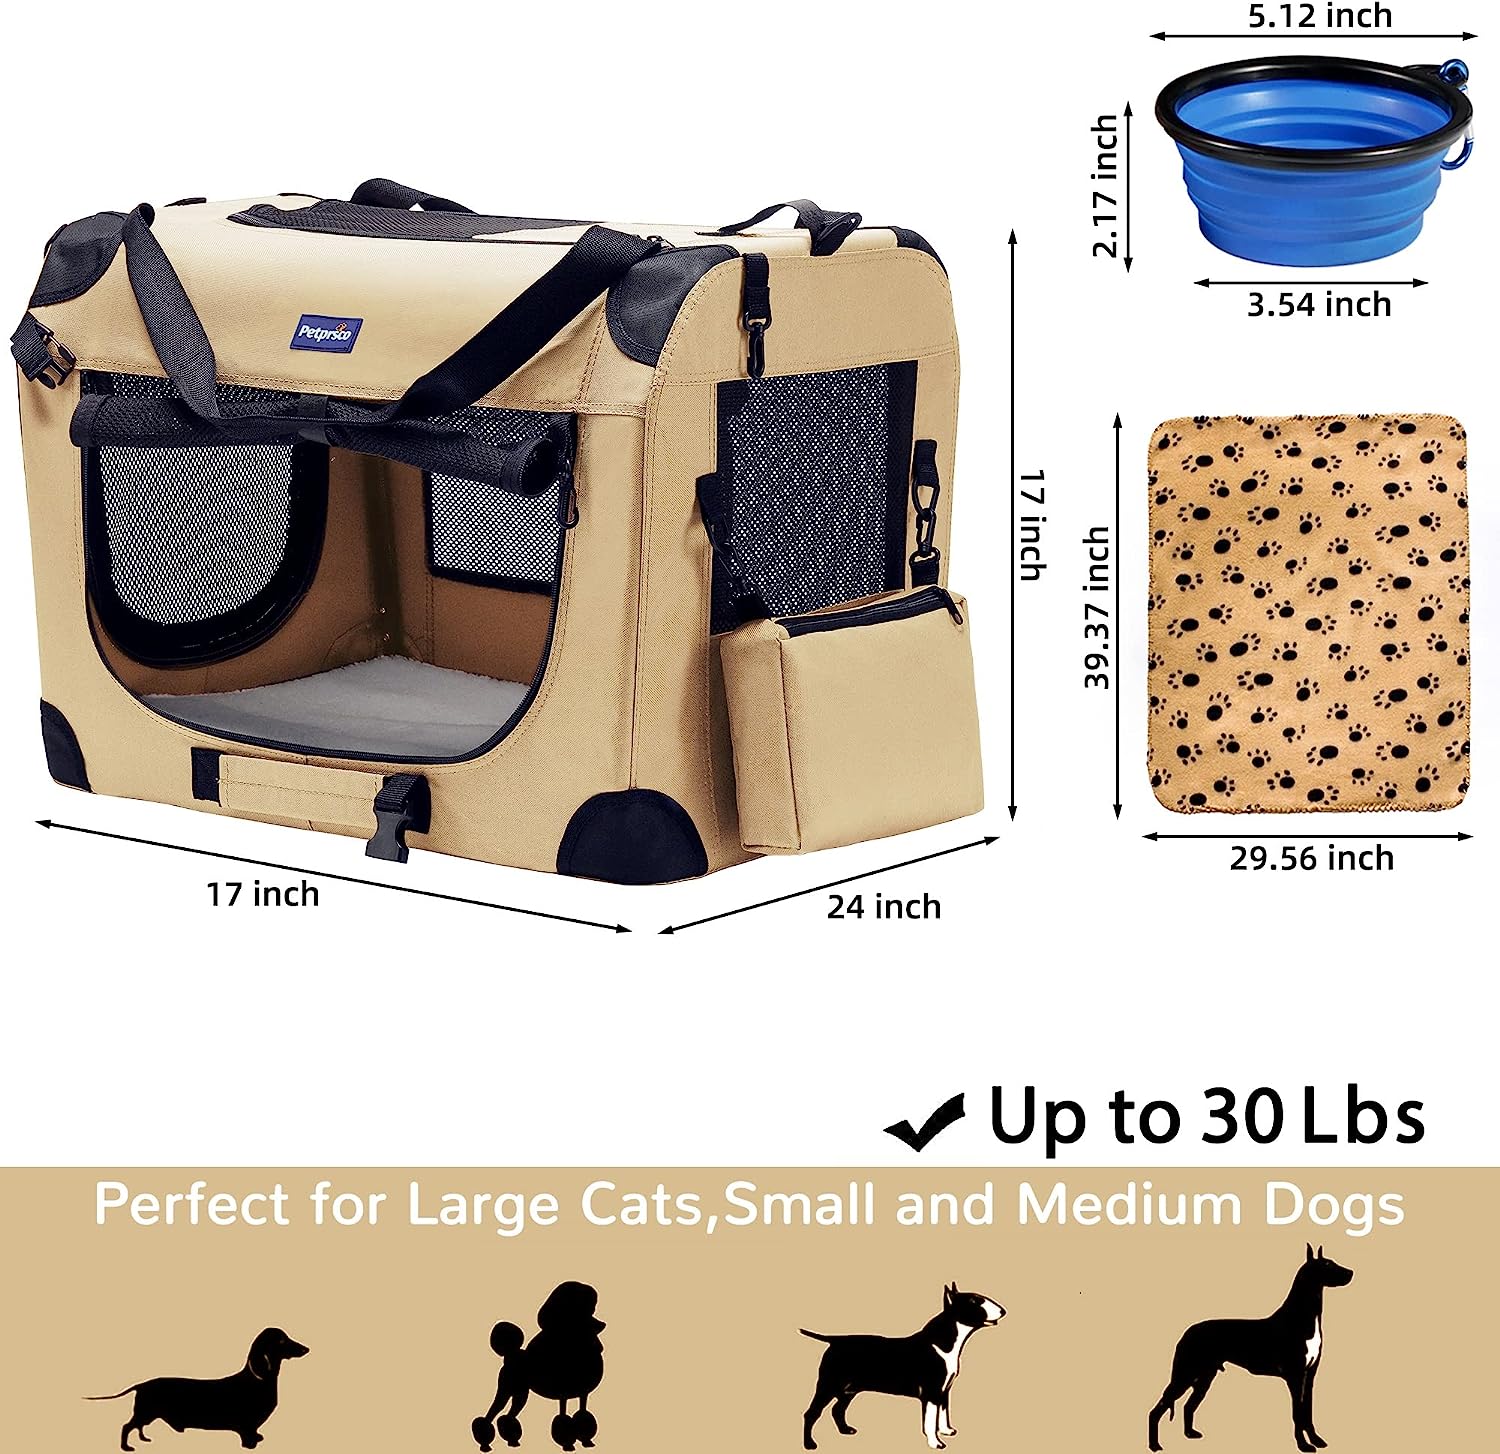 Jaula plegable portátil para perros, jaula de viaje para perros de 24 x 17 x 17